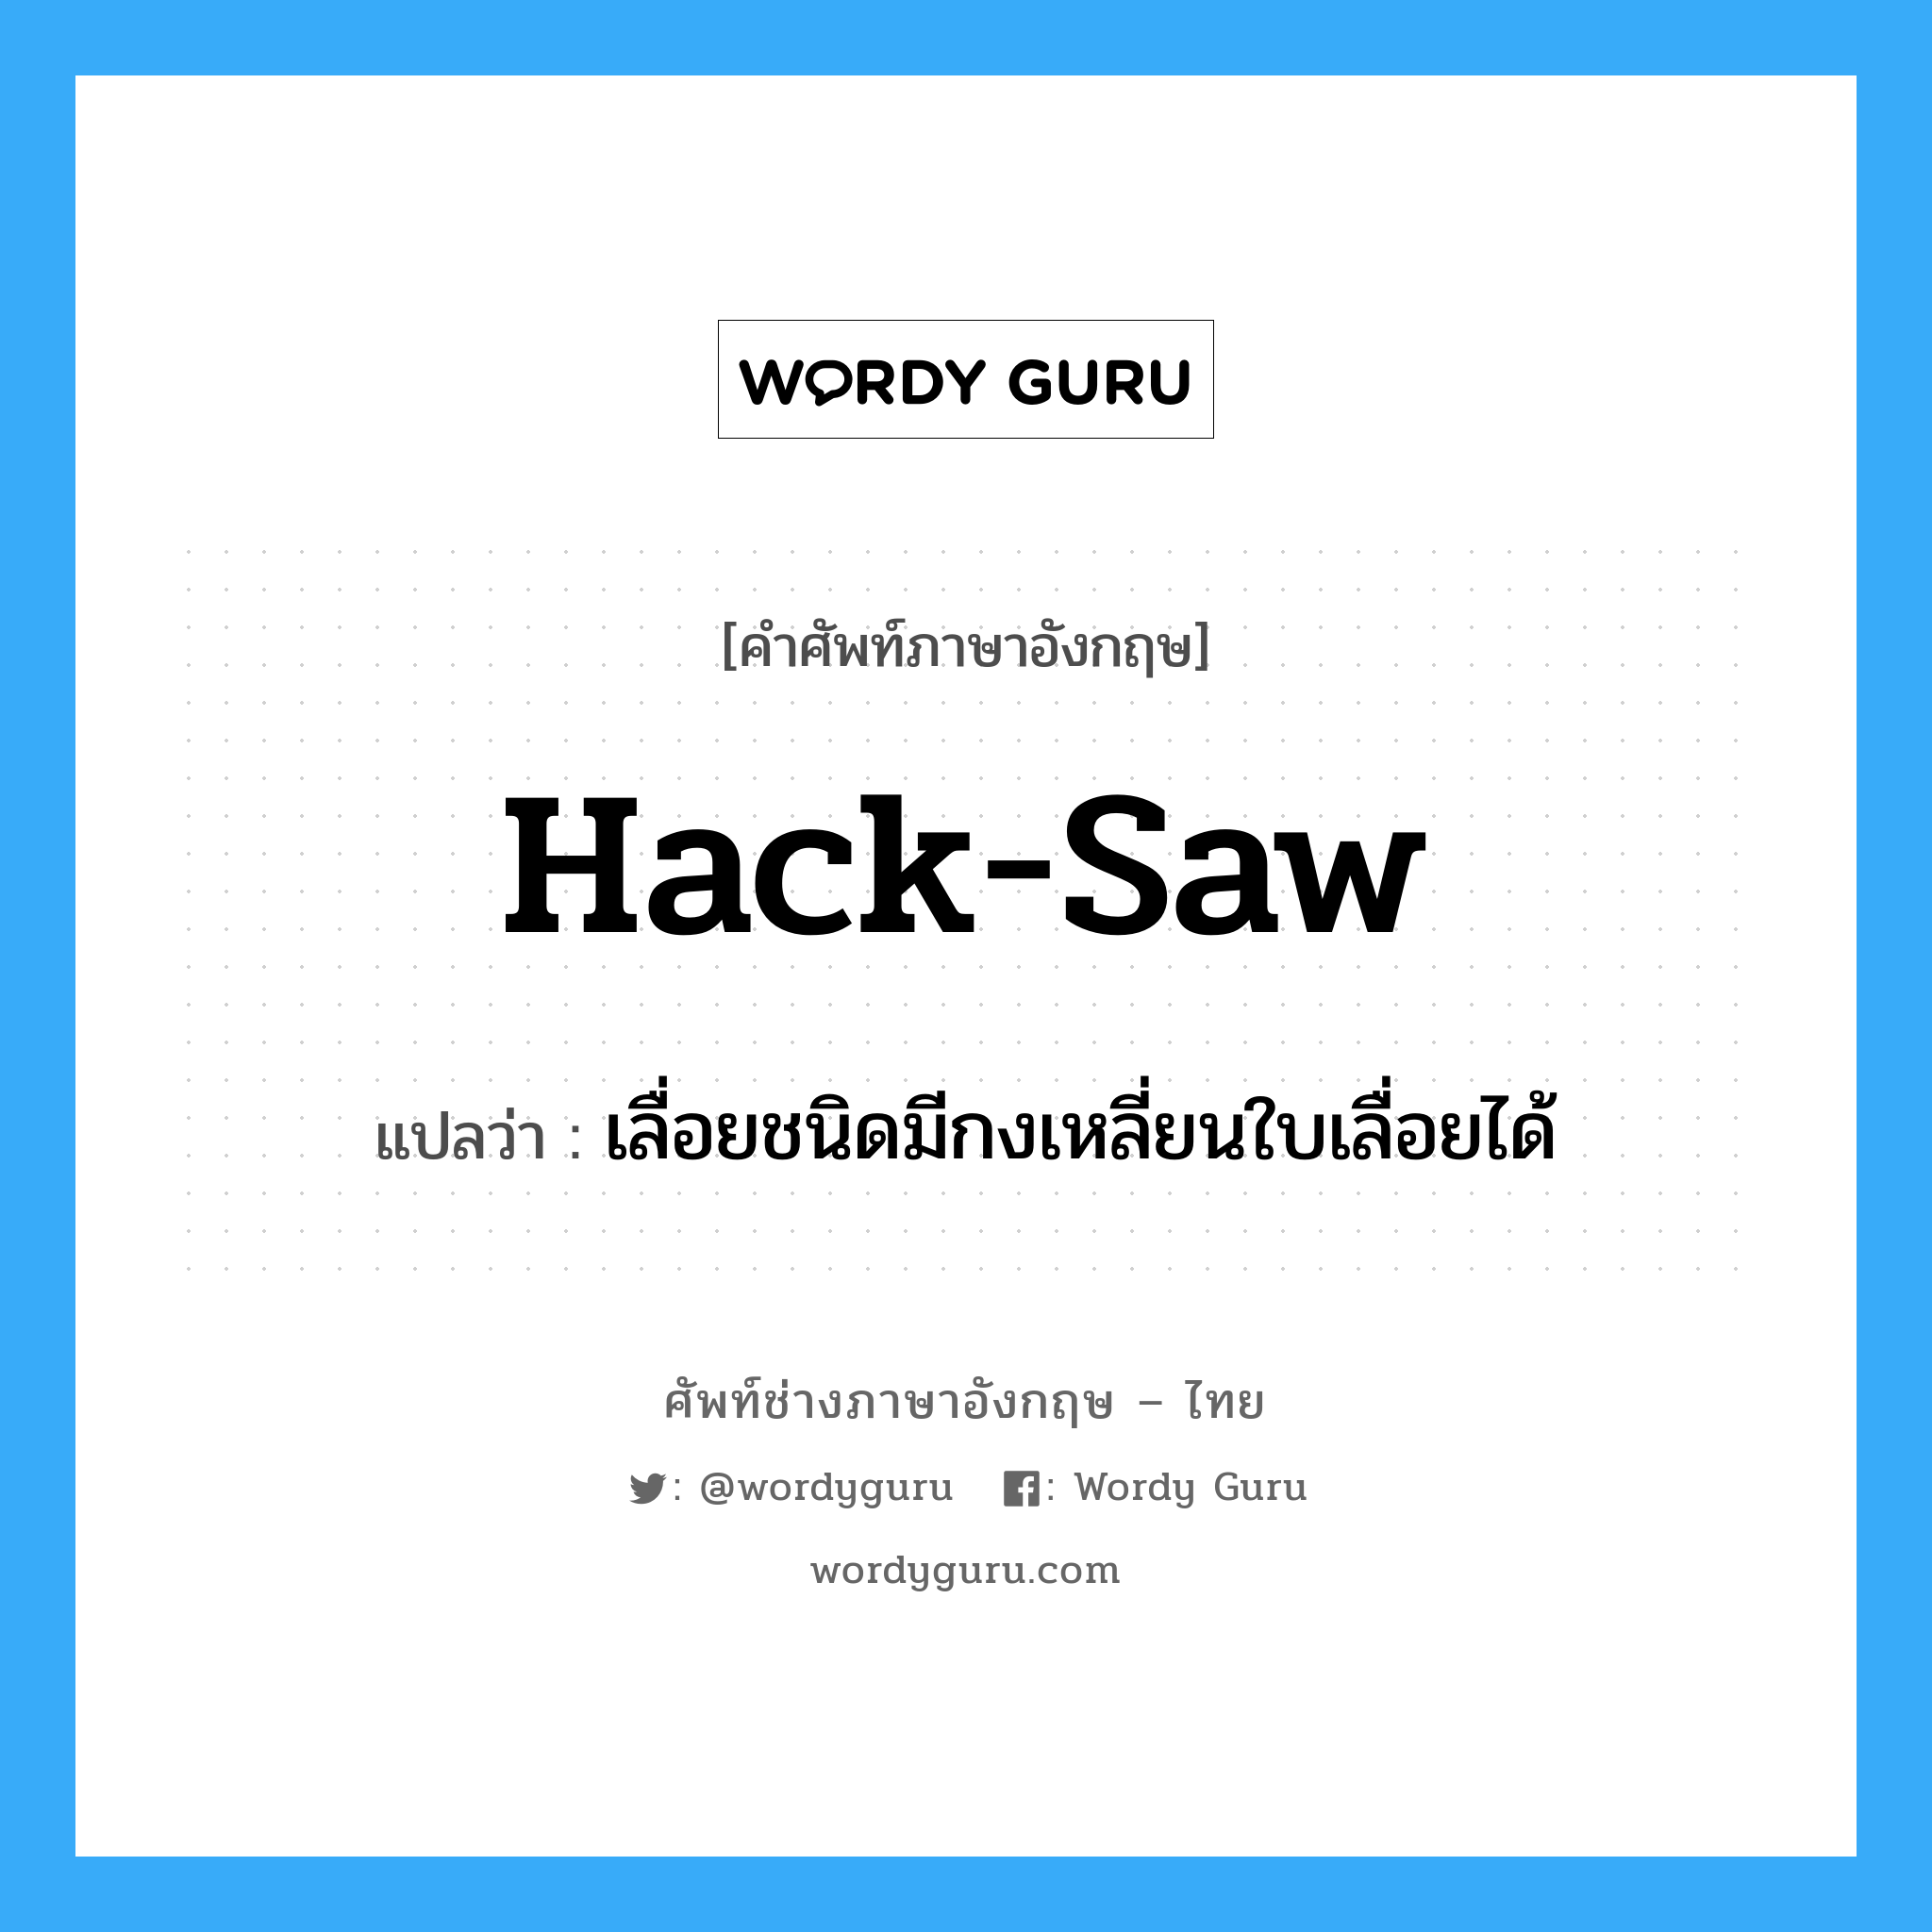 hack saw แปลว่า?, คำศัพท์ช่างภาษาอังกฤษ - ไทย hack-saw คำศัพท์ภาษาอังกฤษ hack-saw แปลว่า เลื่อยชนิดมีกงเหลี่ยนใบเลื่อยได้